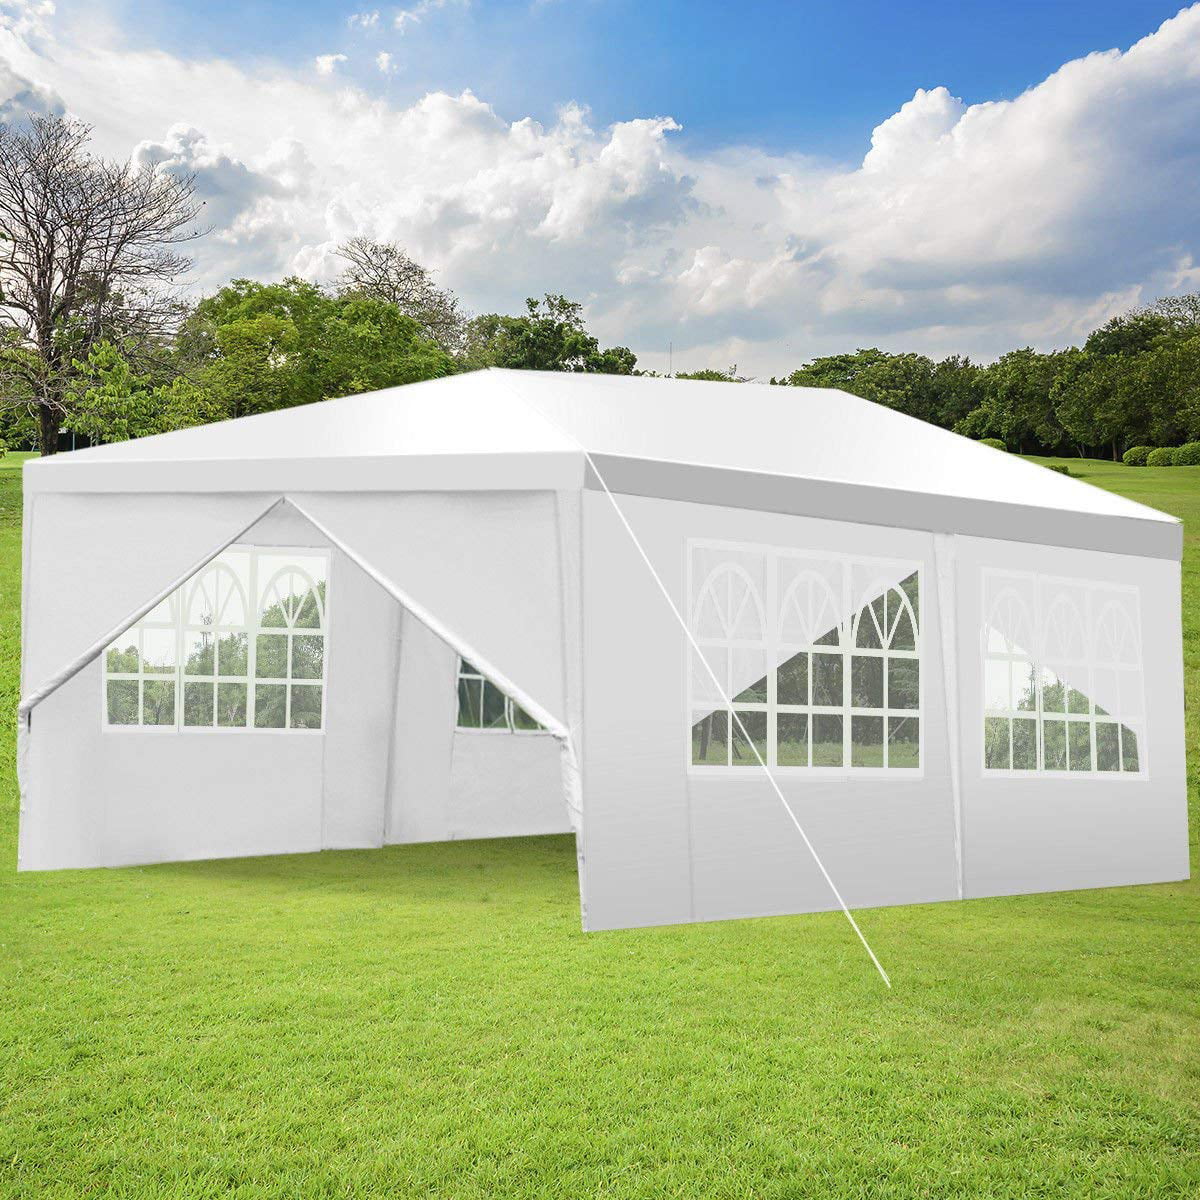 Ktaxon 10'x 20' Party Tent PE Gazebo Wedding Canopy w/6 Sidewalls